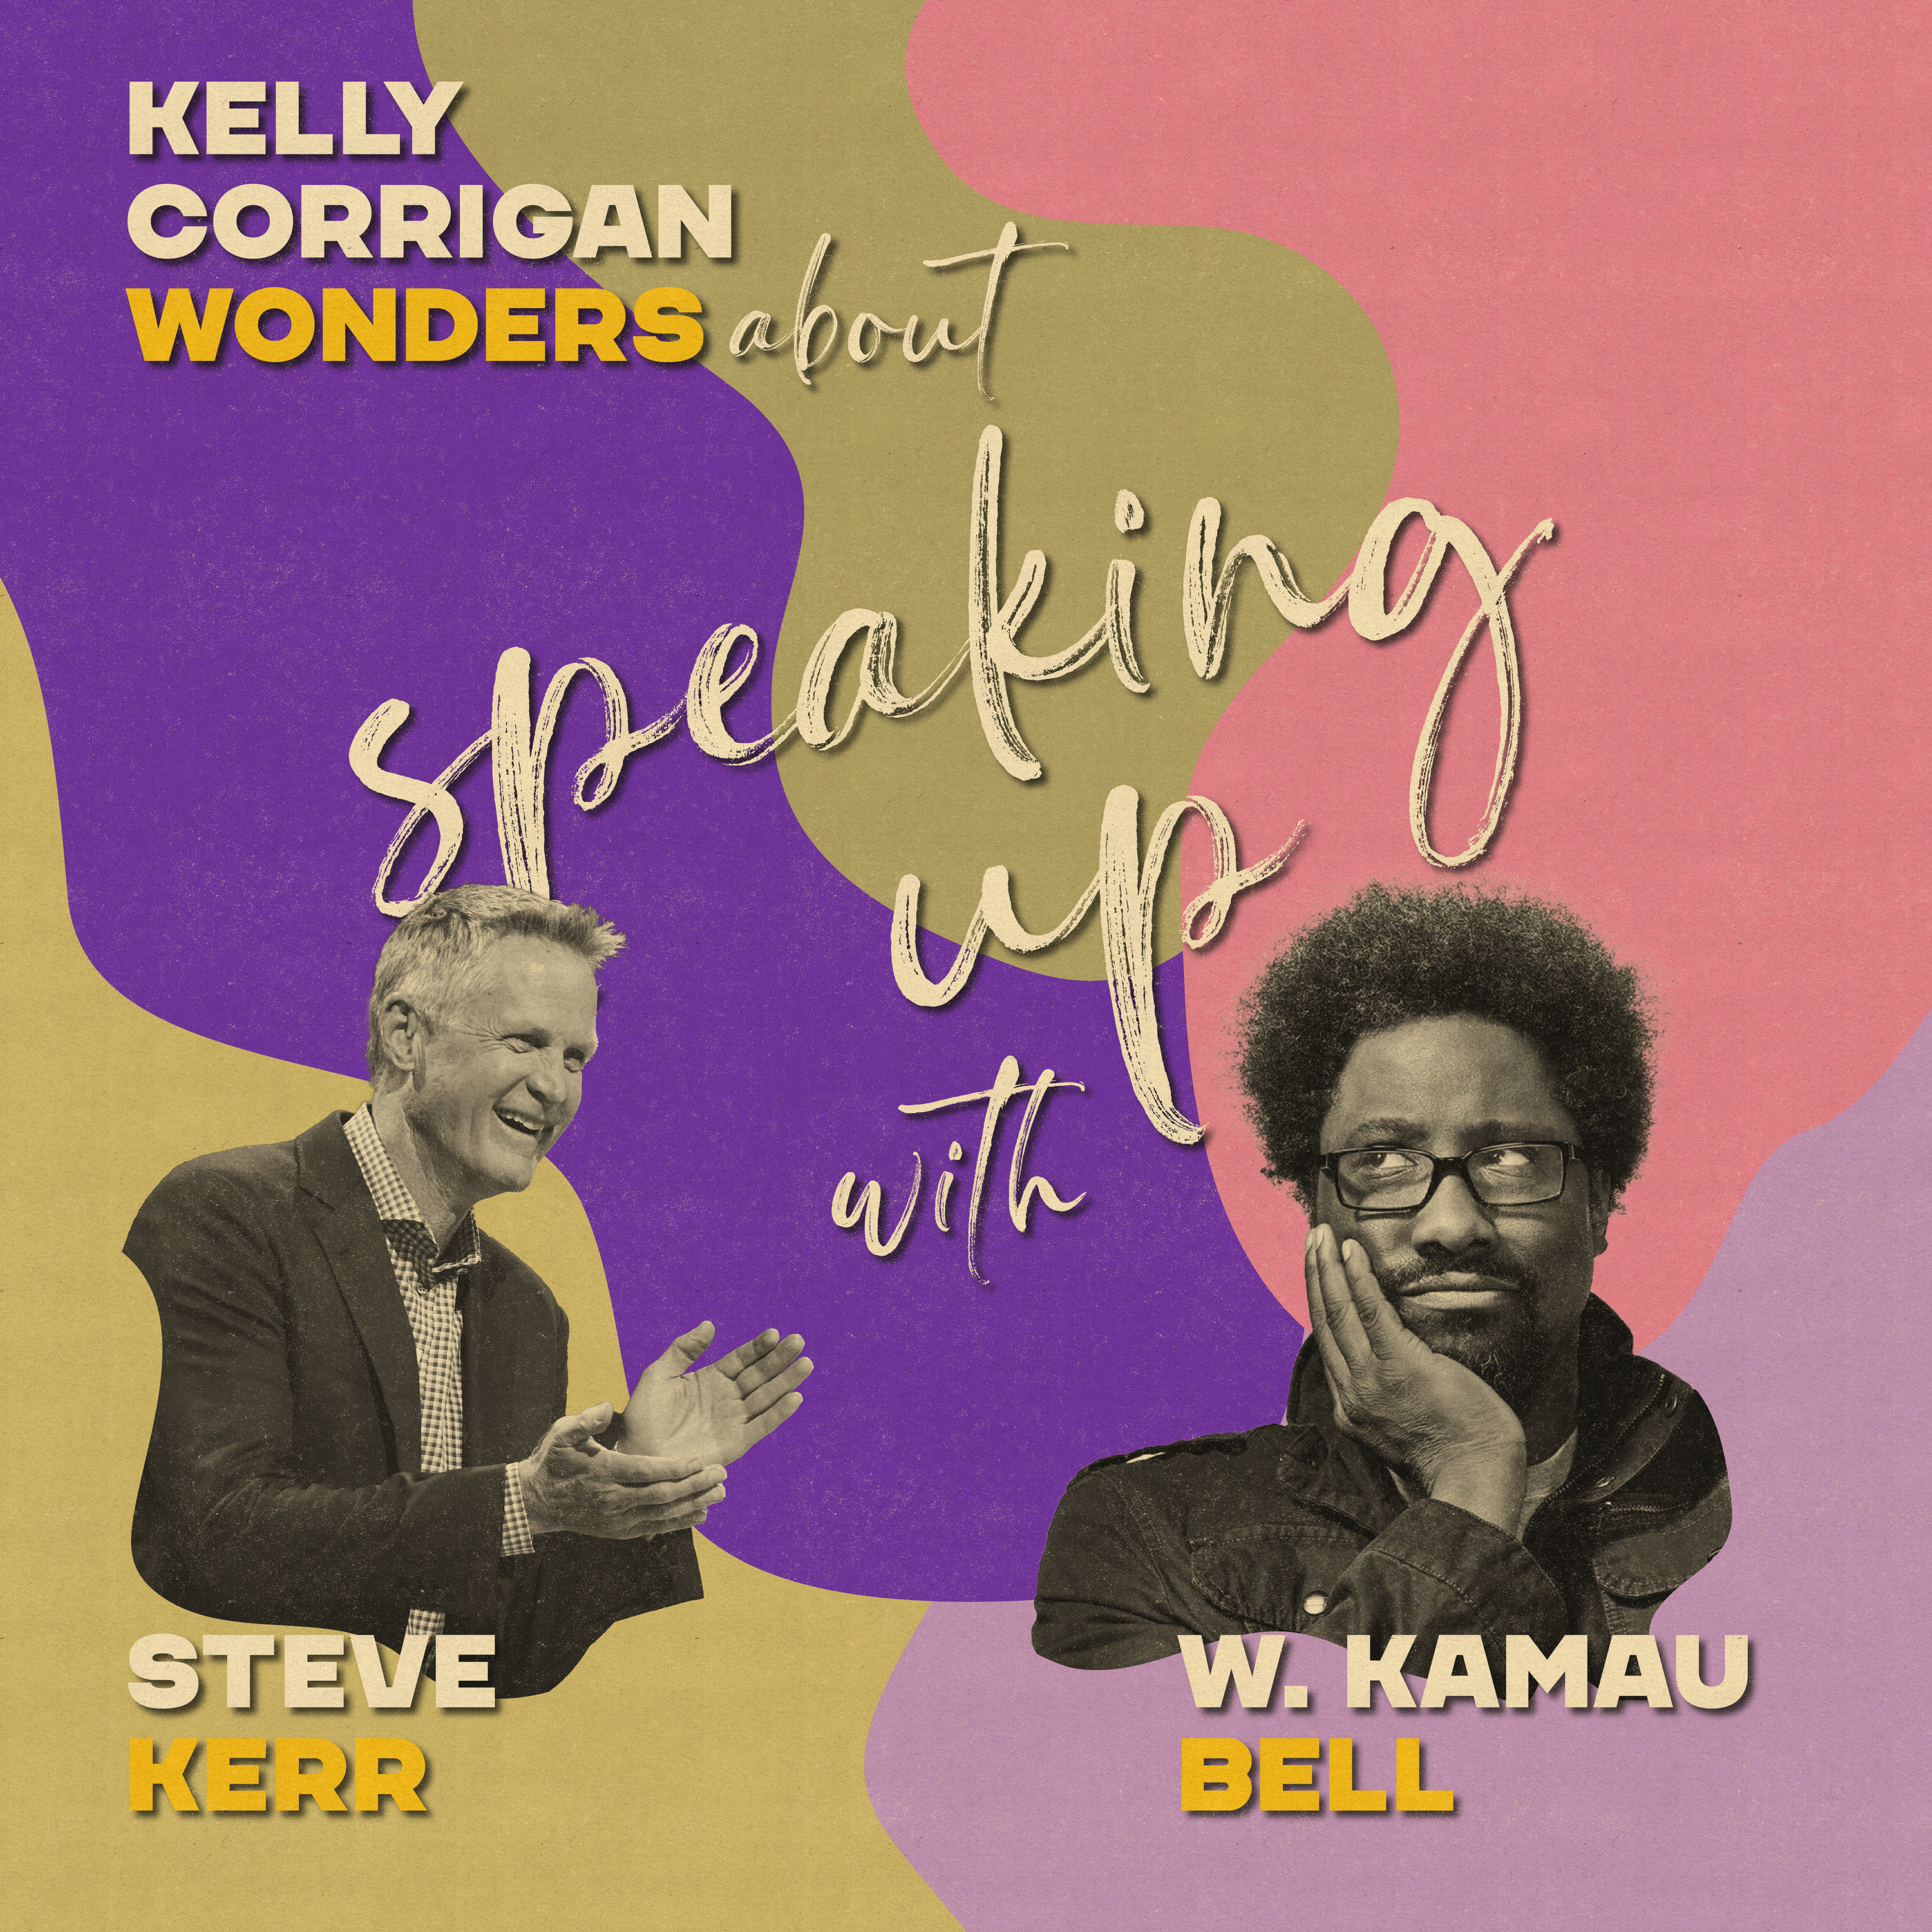 Steve Kerr and W. Kamau Bell on Speaking Up